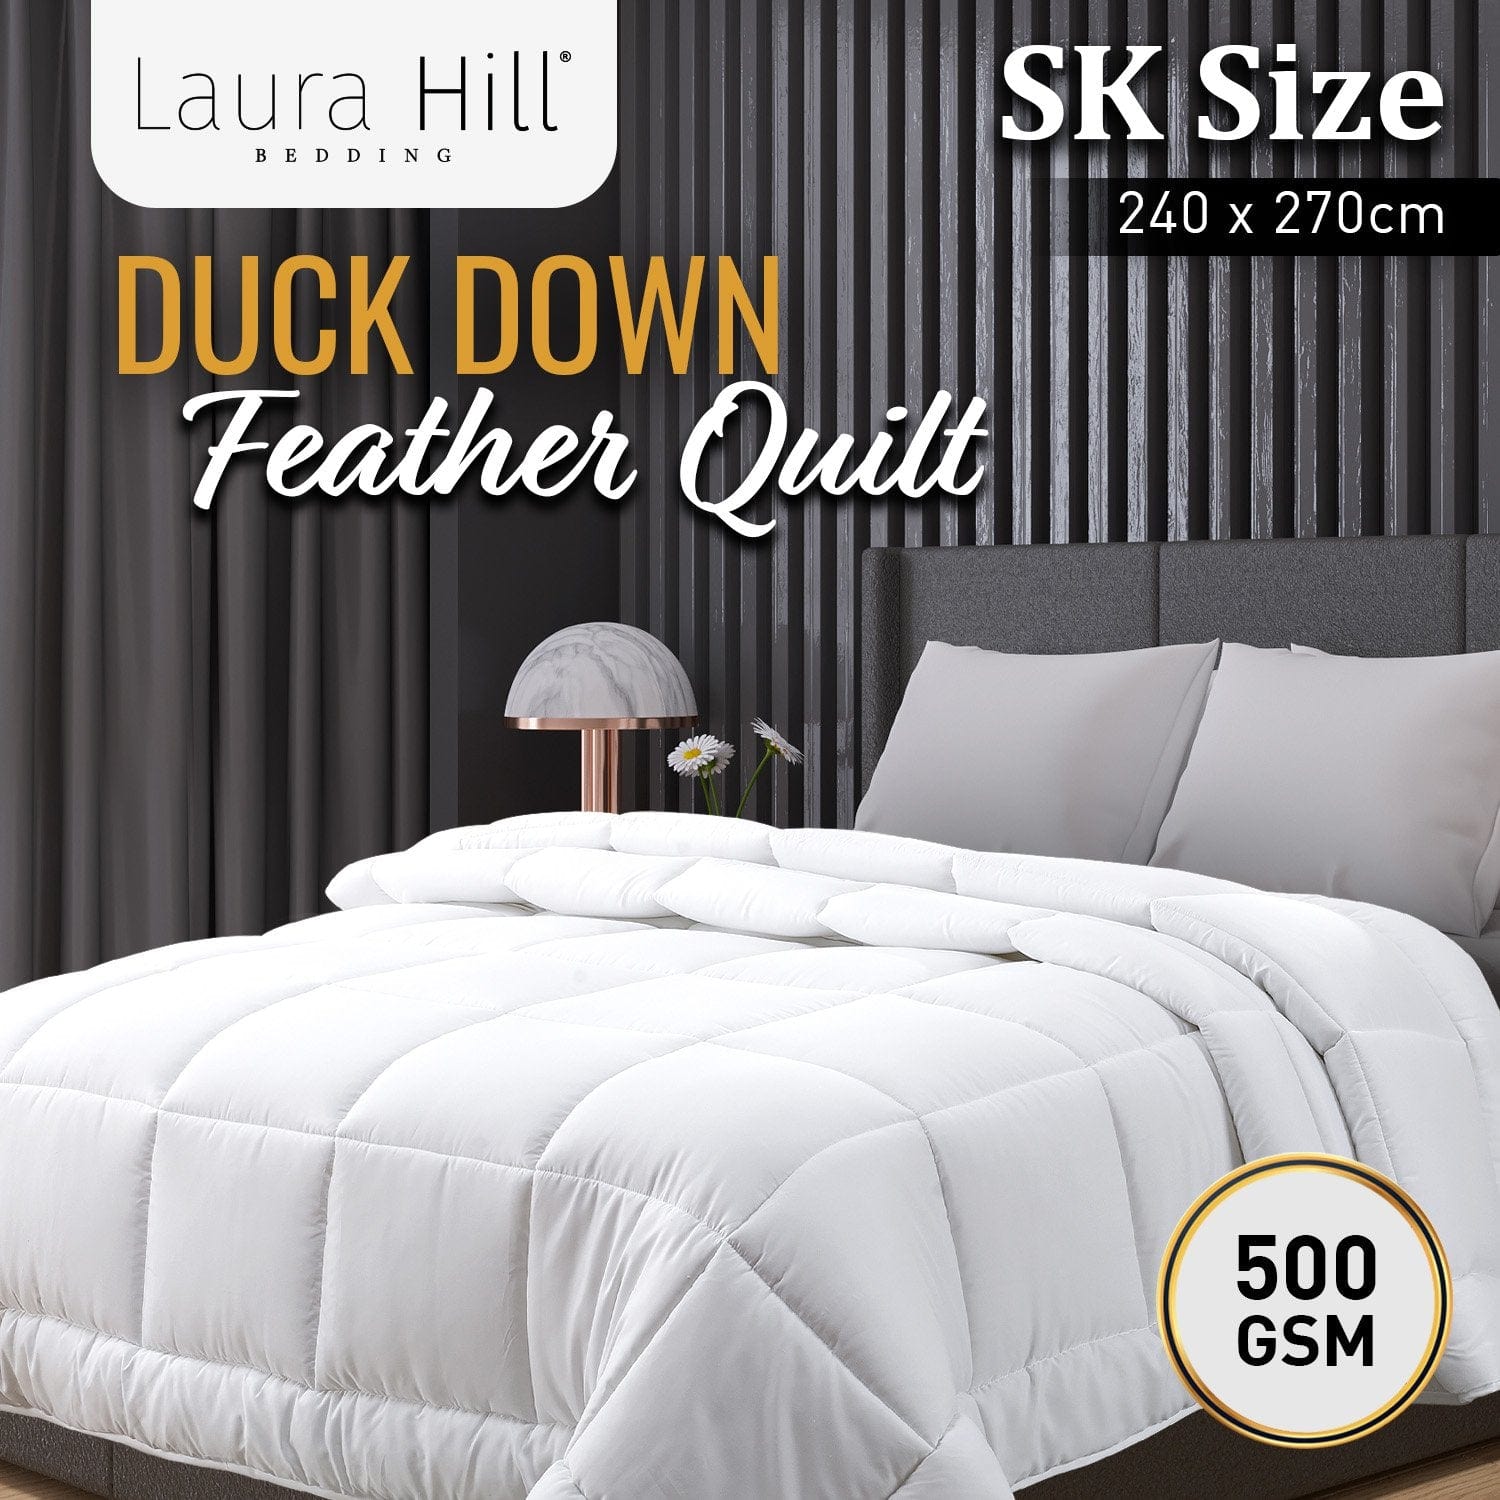 500GSM Duck Down Feather Quilt Comforter Doona - Queen